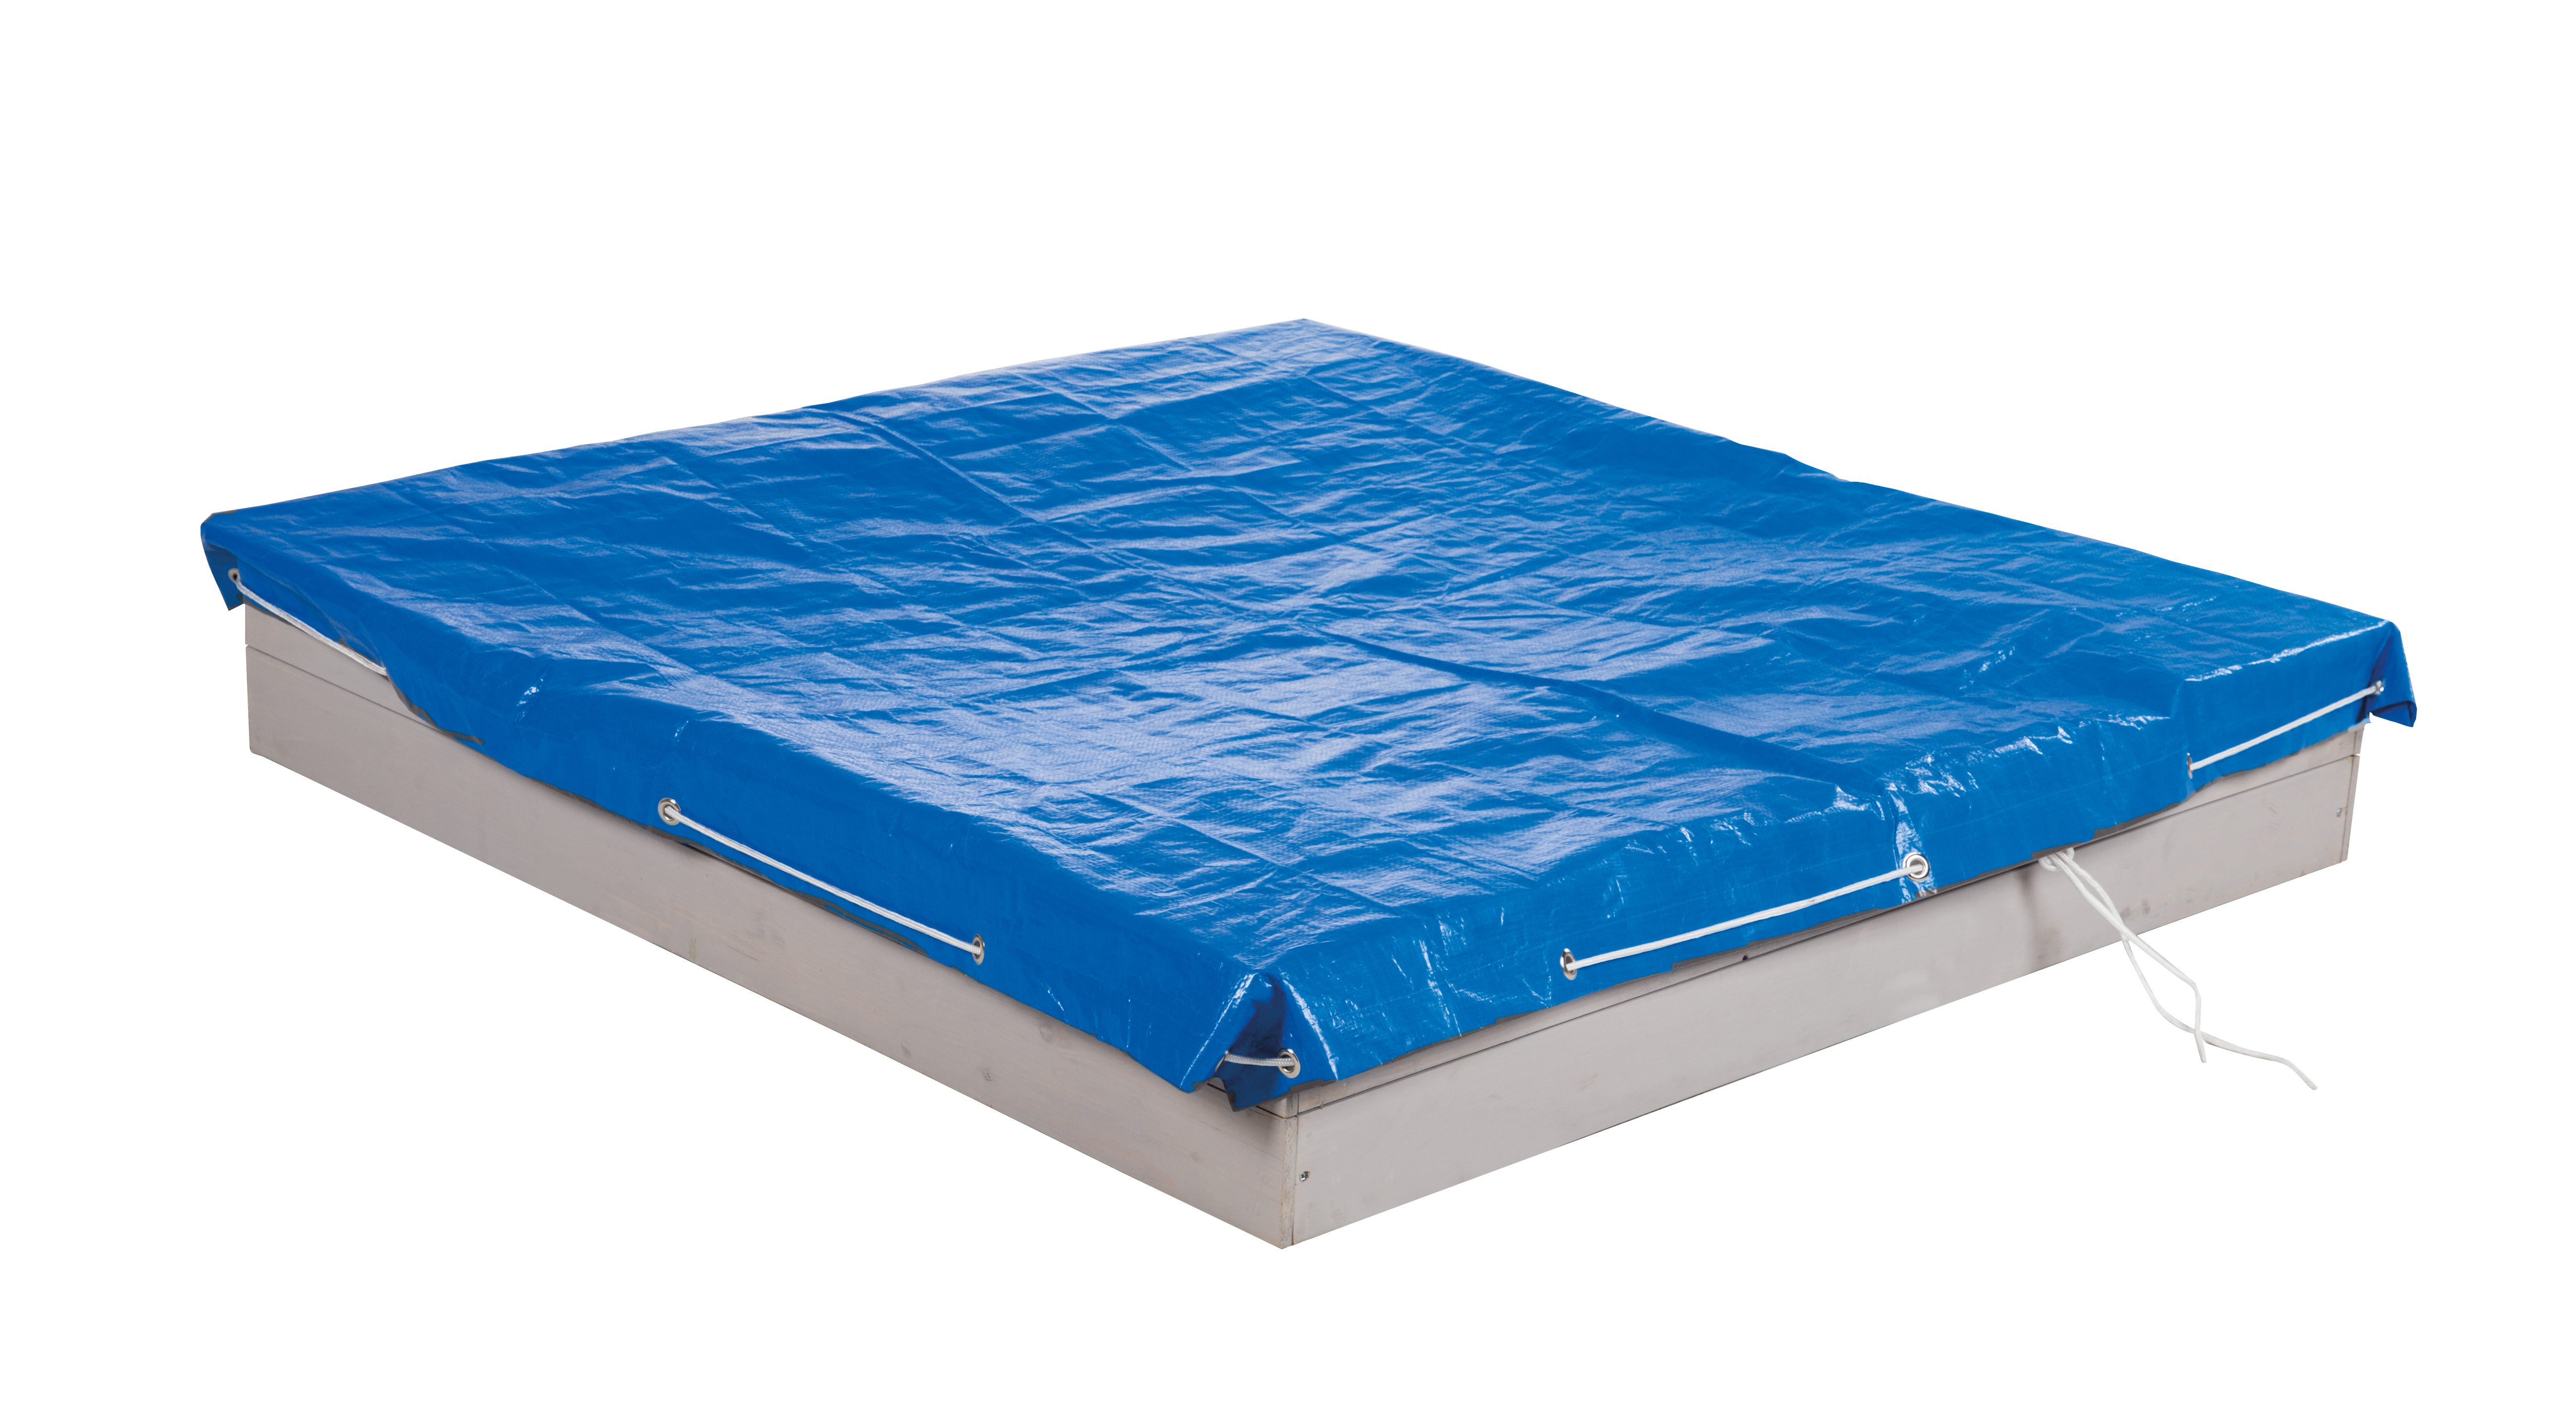 roba® Sandkasten-Abdeckplane 154 x 154 cm in blau, Abdeckplane für Sandkästen mit Metallösen zur Befestigung